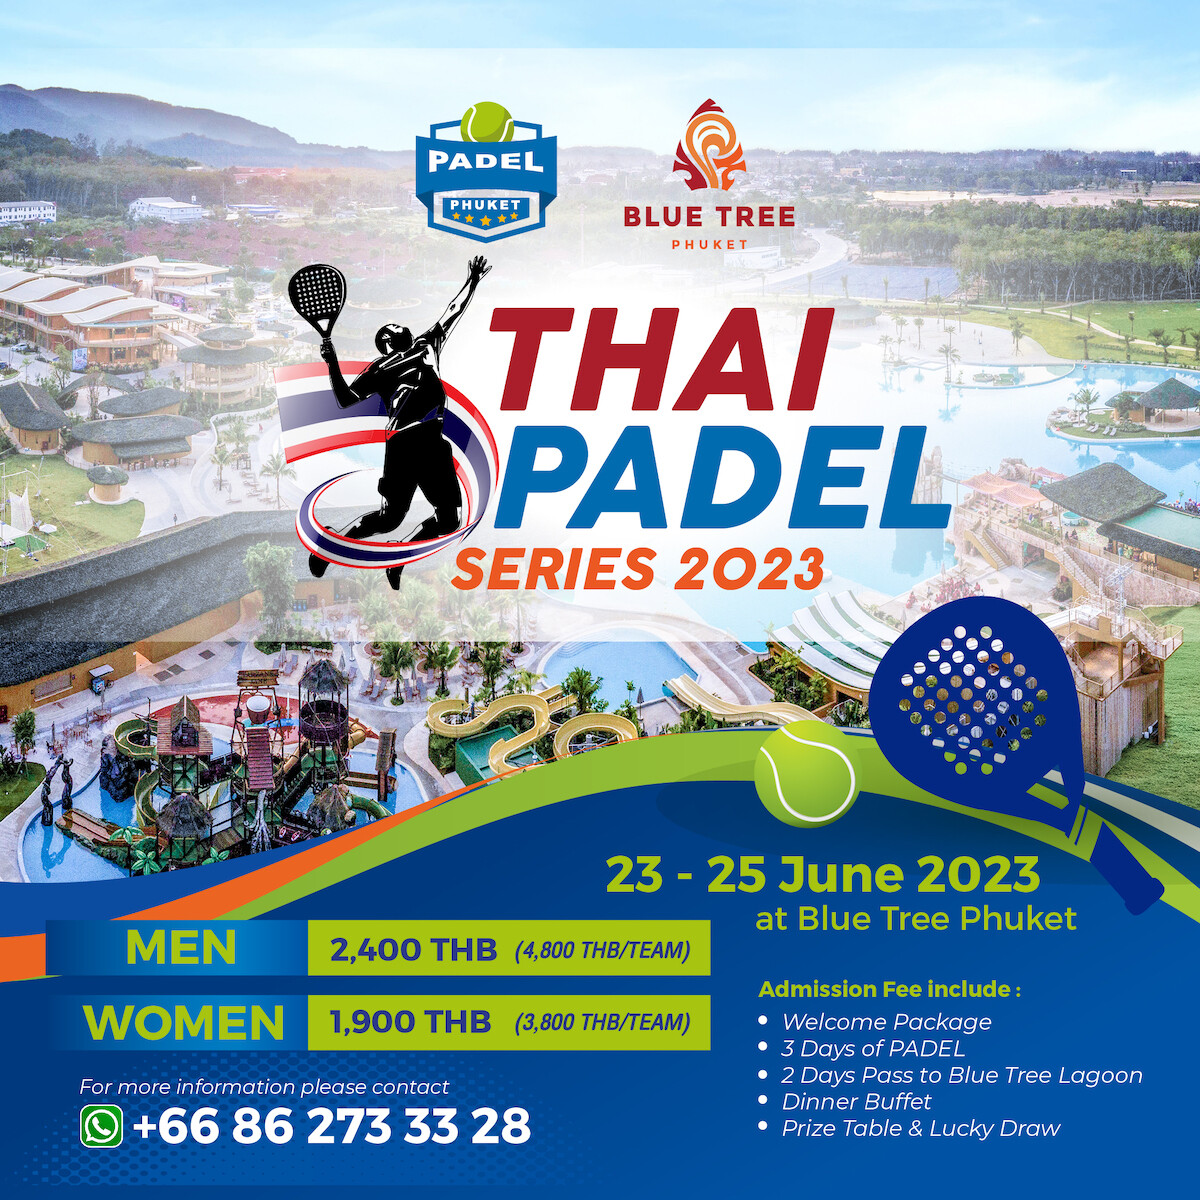 "บลูทรี ภูเก็ต" เปิดสนามต้อนรับนักกีฬาชาวไทย-ต่างชาติ ครั้งแรก! กับการแข่งขัน "Thai Padel Series 2023" กีฬาสุดฮิตจากยุโรป ในระหว่างวันที่ 23-25 มิ.ย. พร้อมเปิดรับสมัครแล้ววันนี้!!